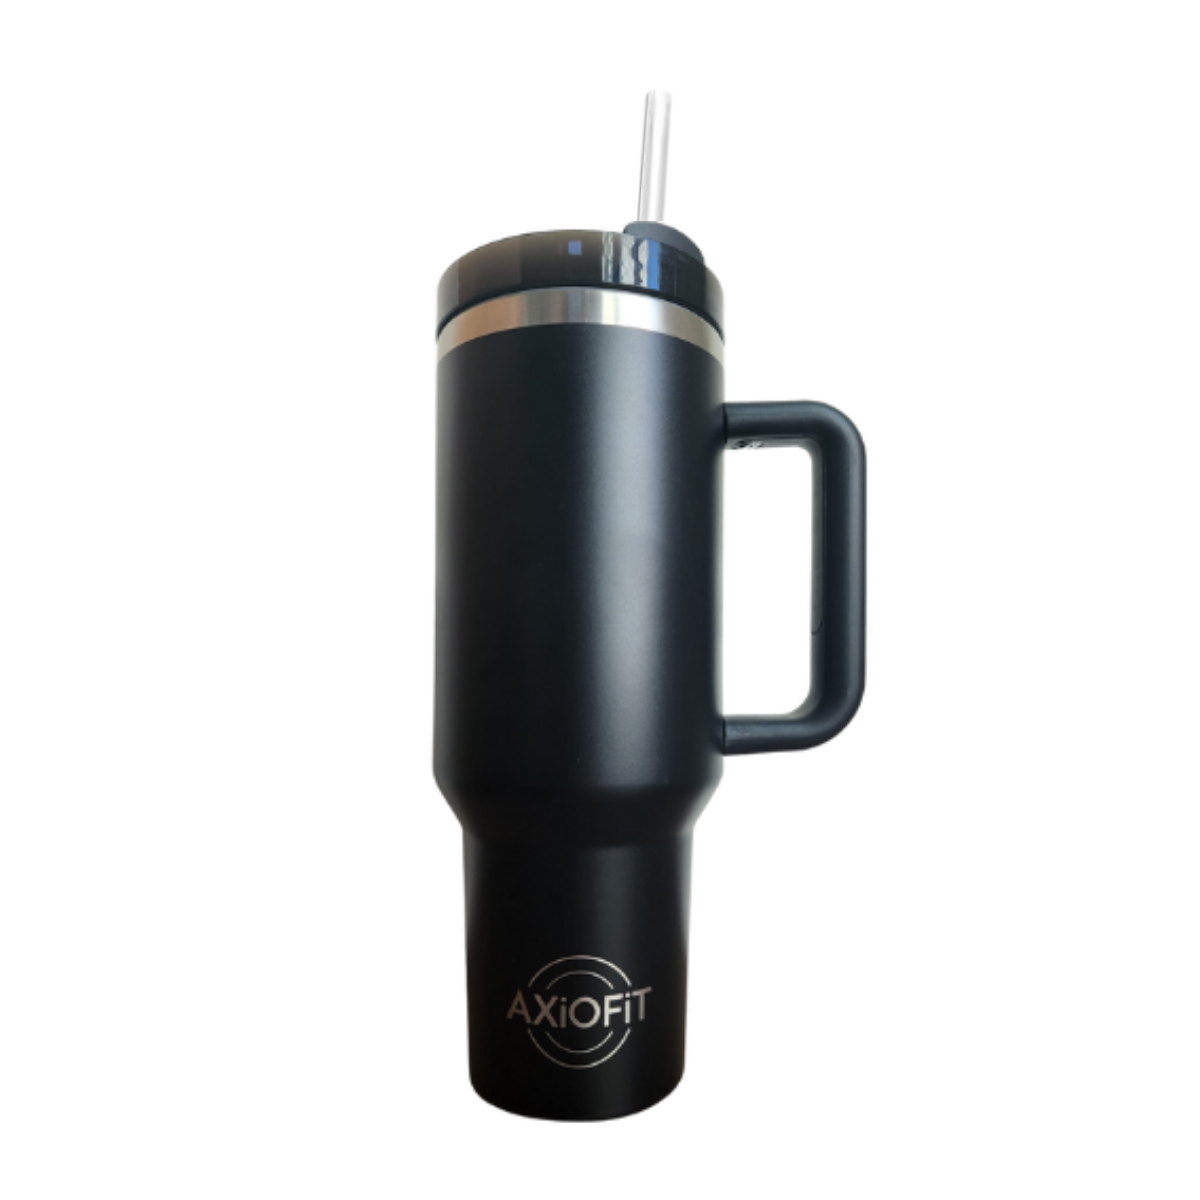 Travel Mug with Handle, 40 oz